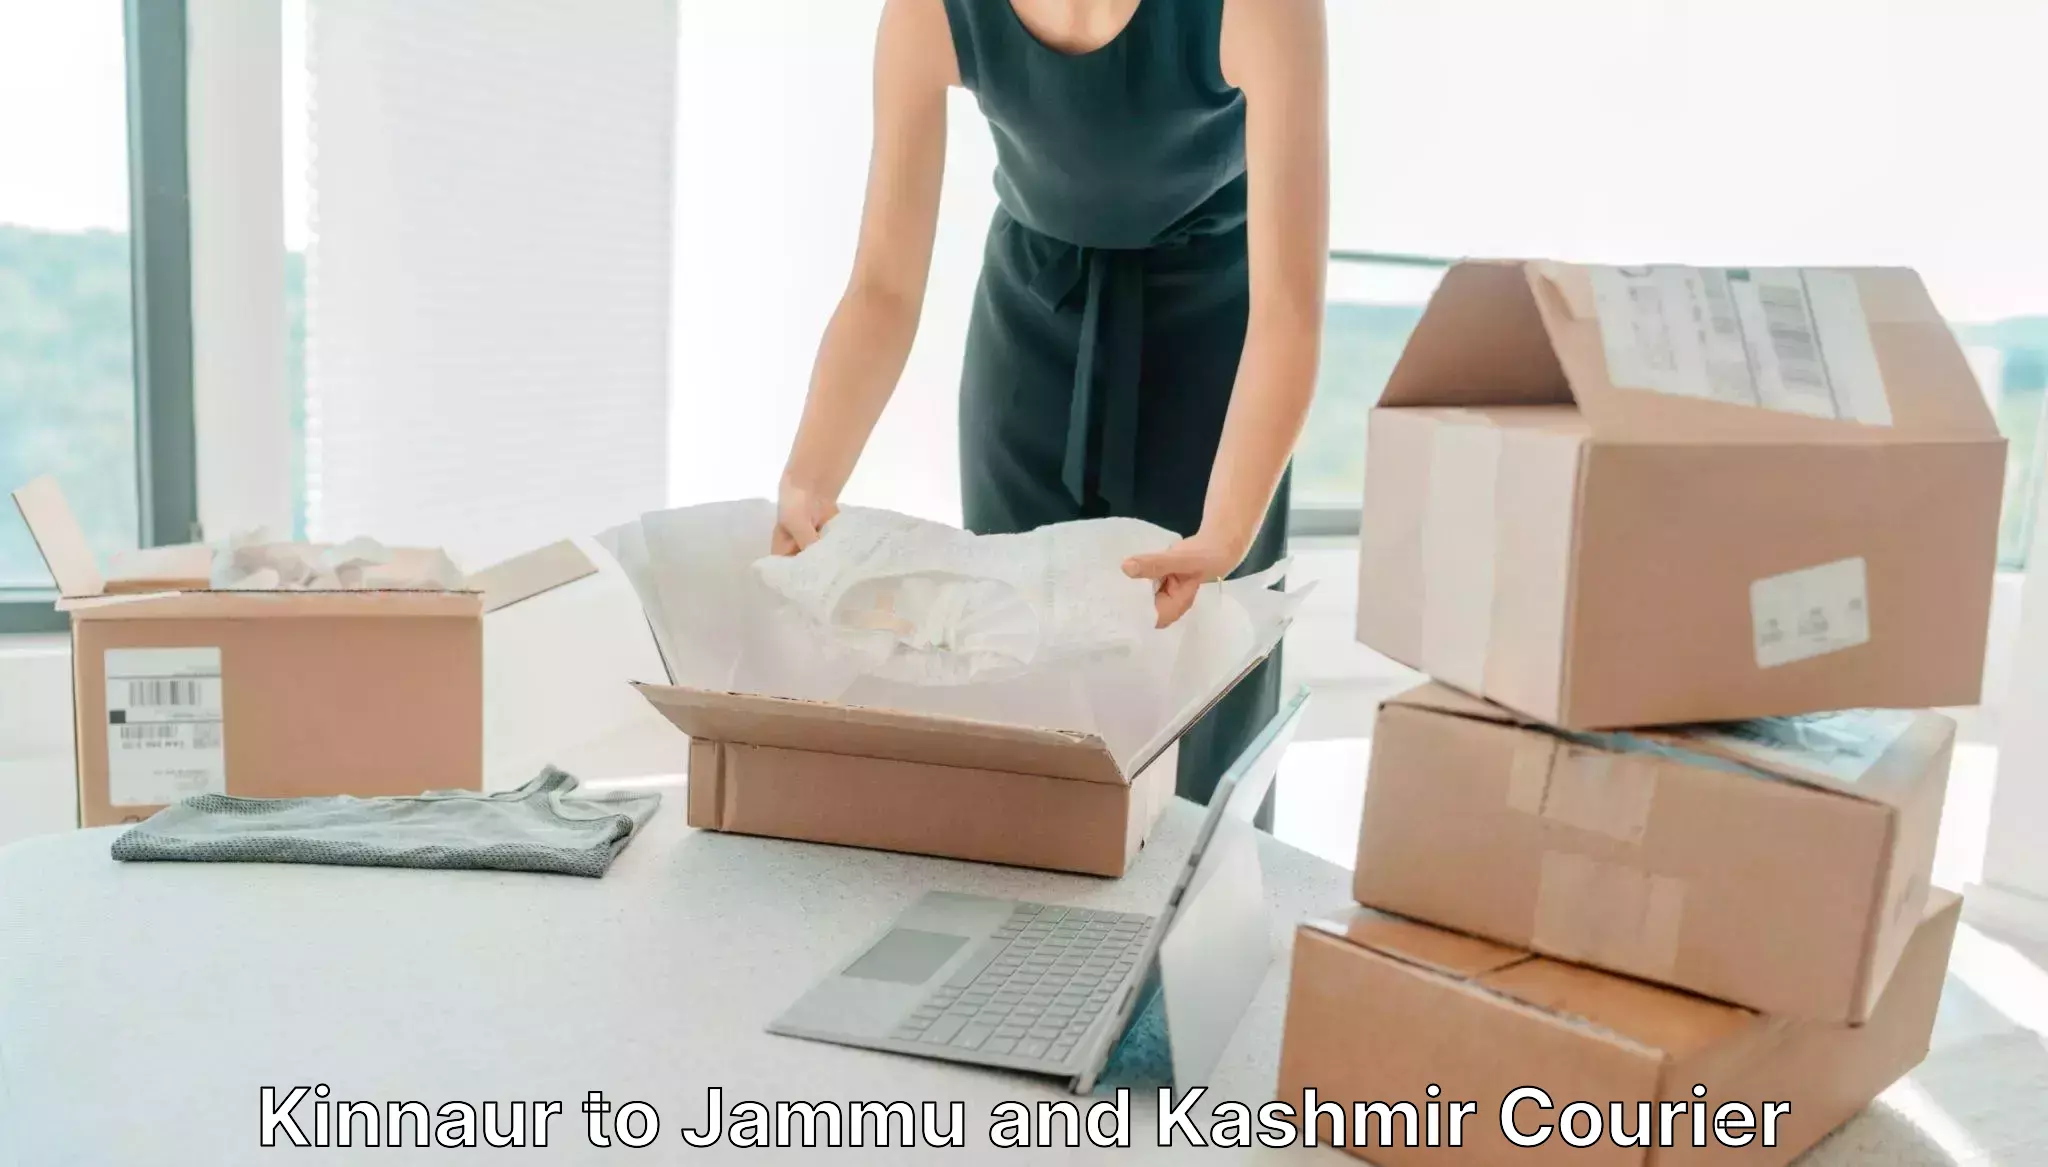 User-friendly delivery service Kinnaur to NIT Srinagar